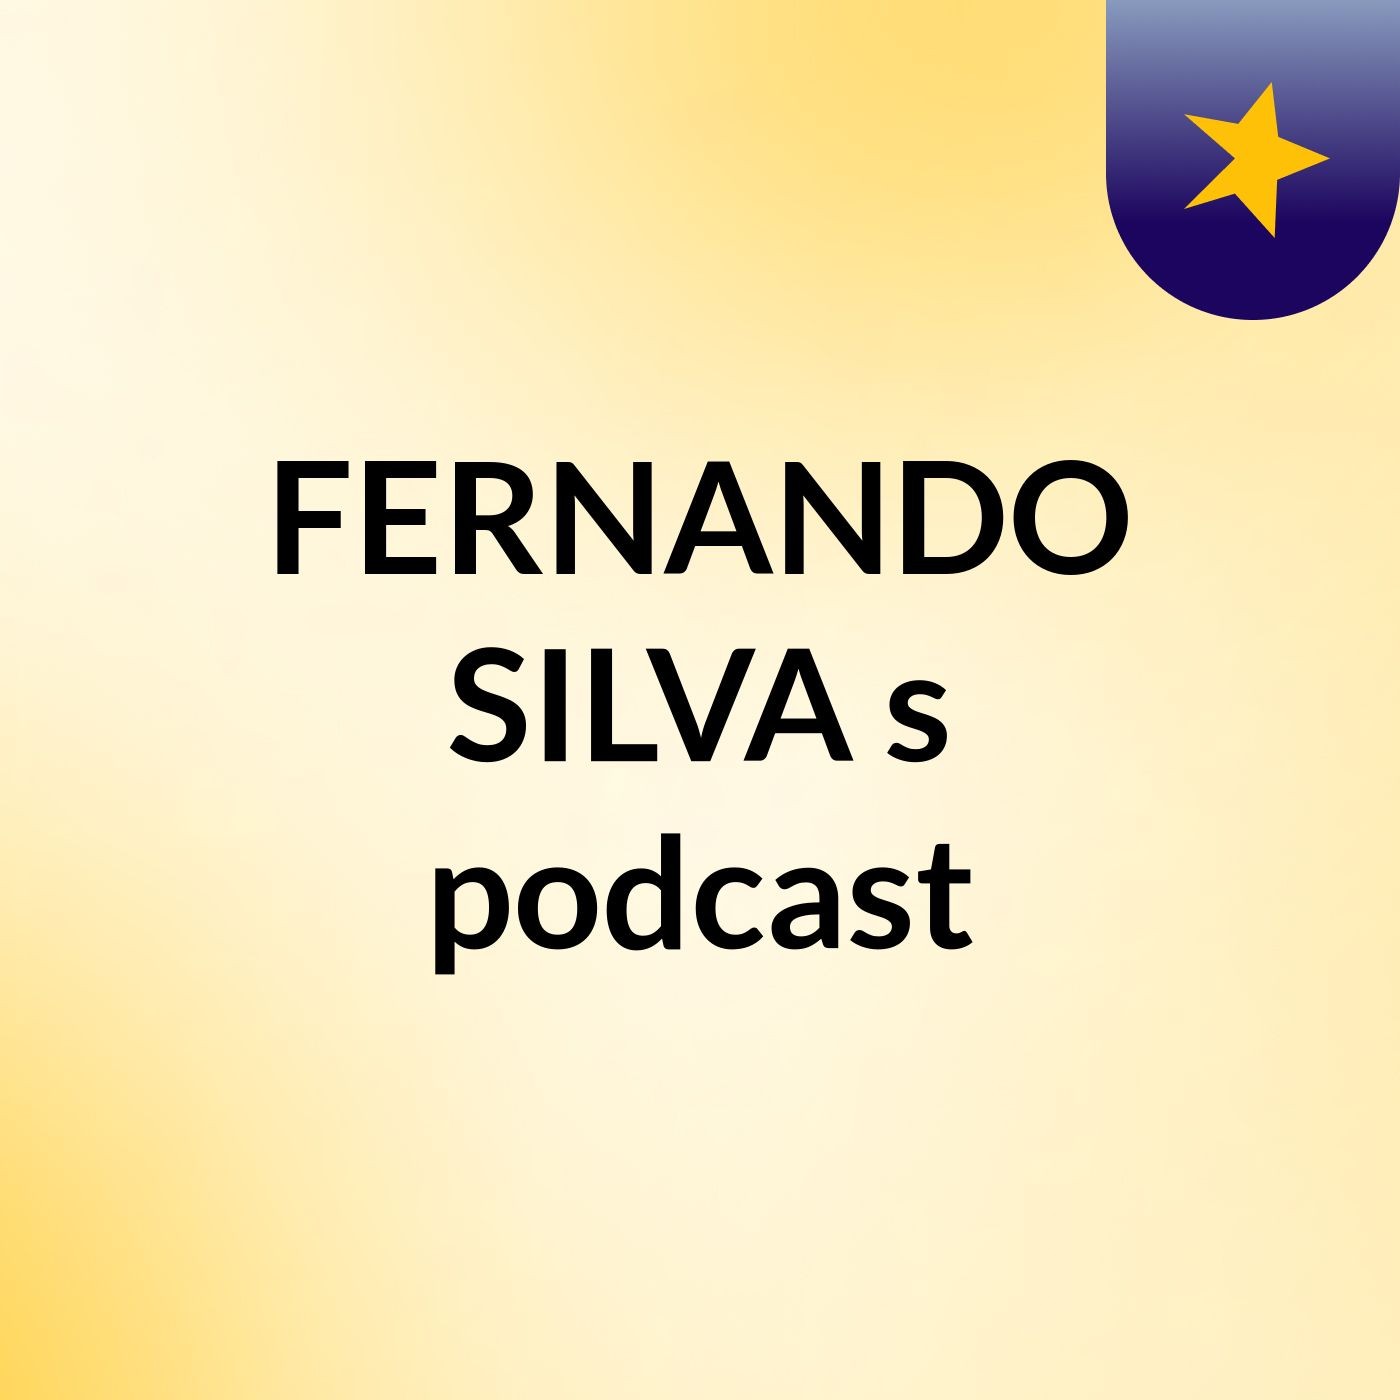 Episódio 6 - FERNANDO SILVA's podcast